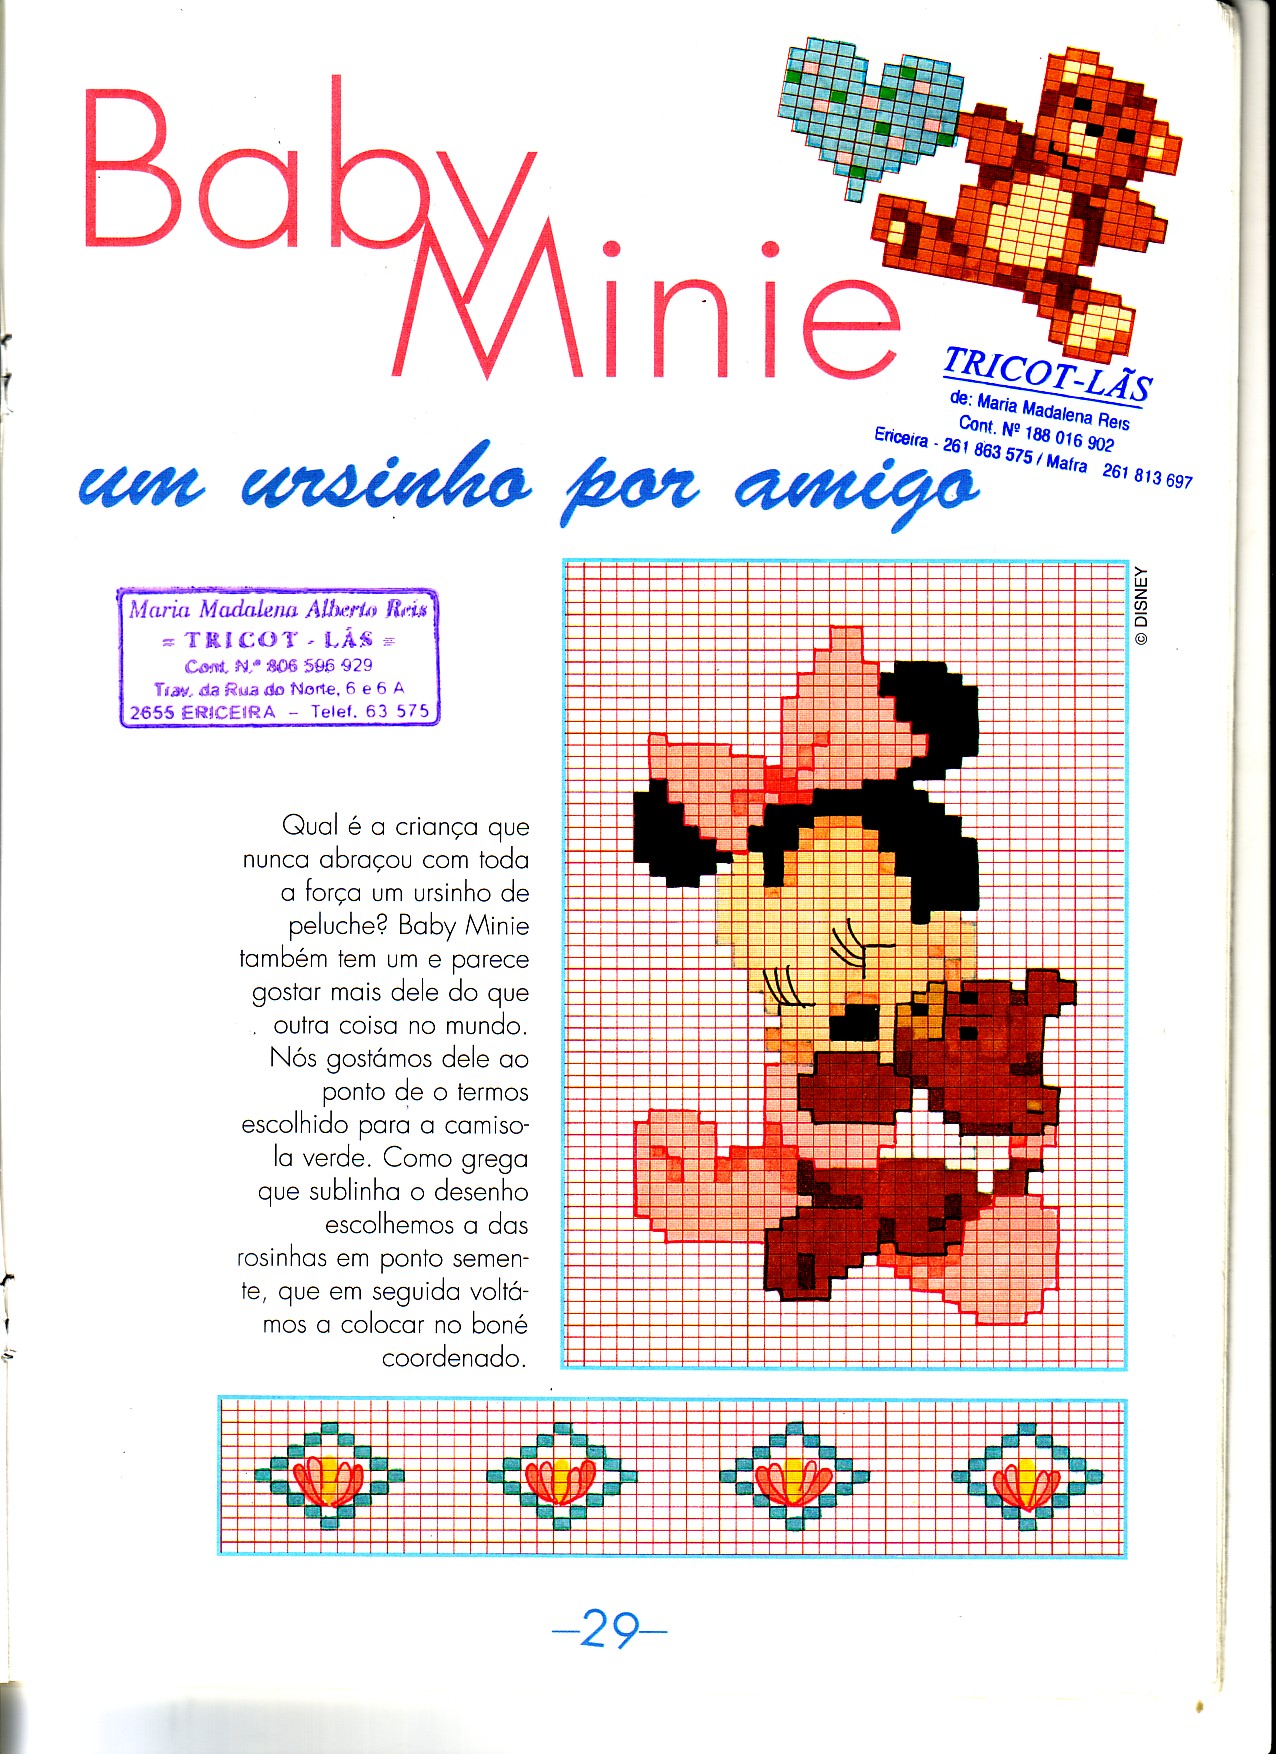 Cross stitch pattern baby Minnie with teddy bear